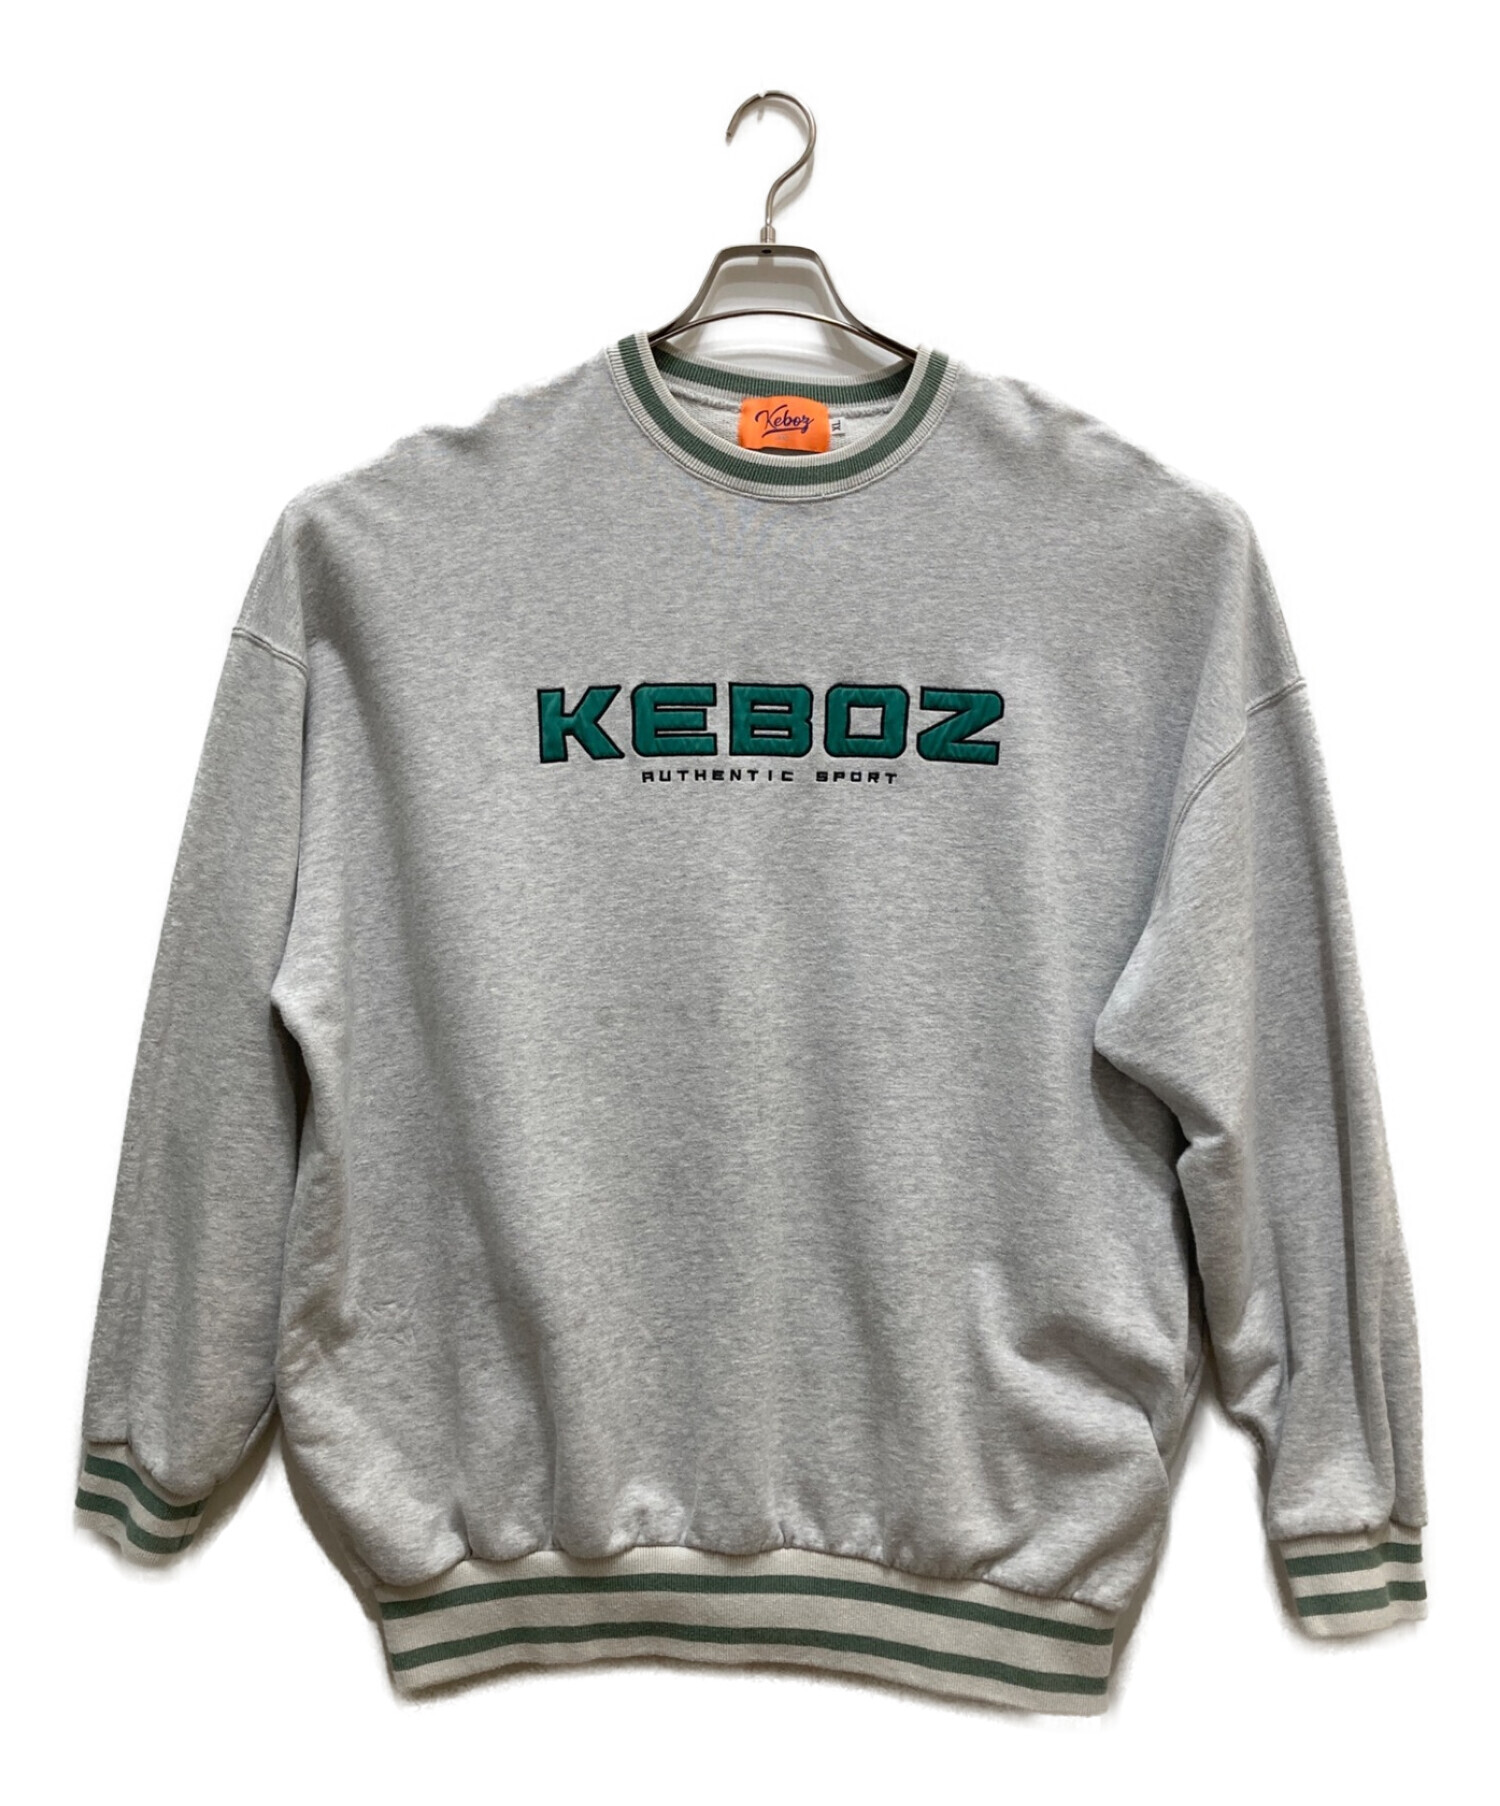 KEBOZ (ケボズ) ロゴスウェット グレー サイズ:XL